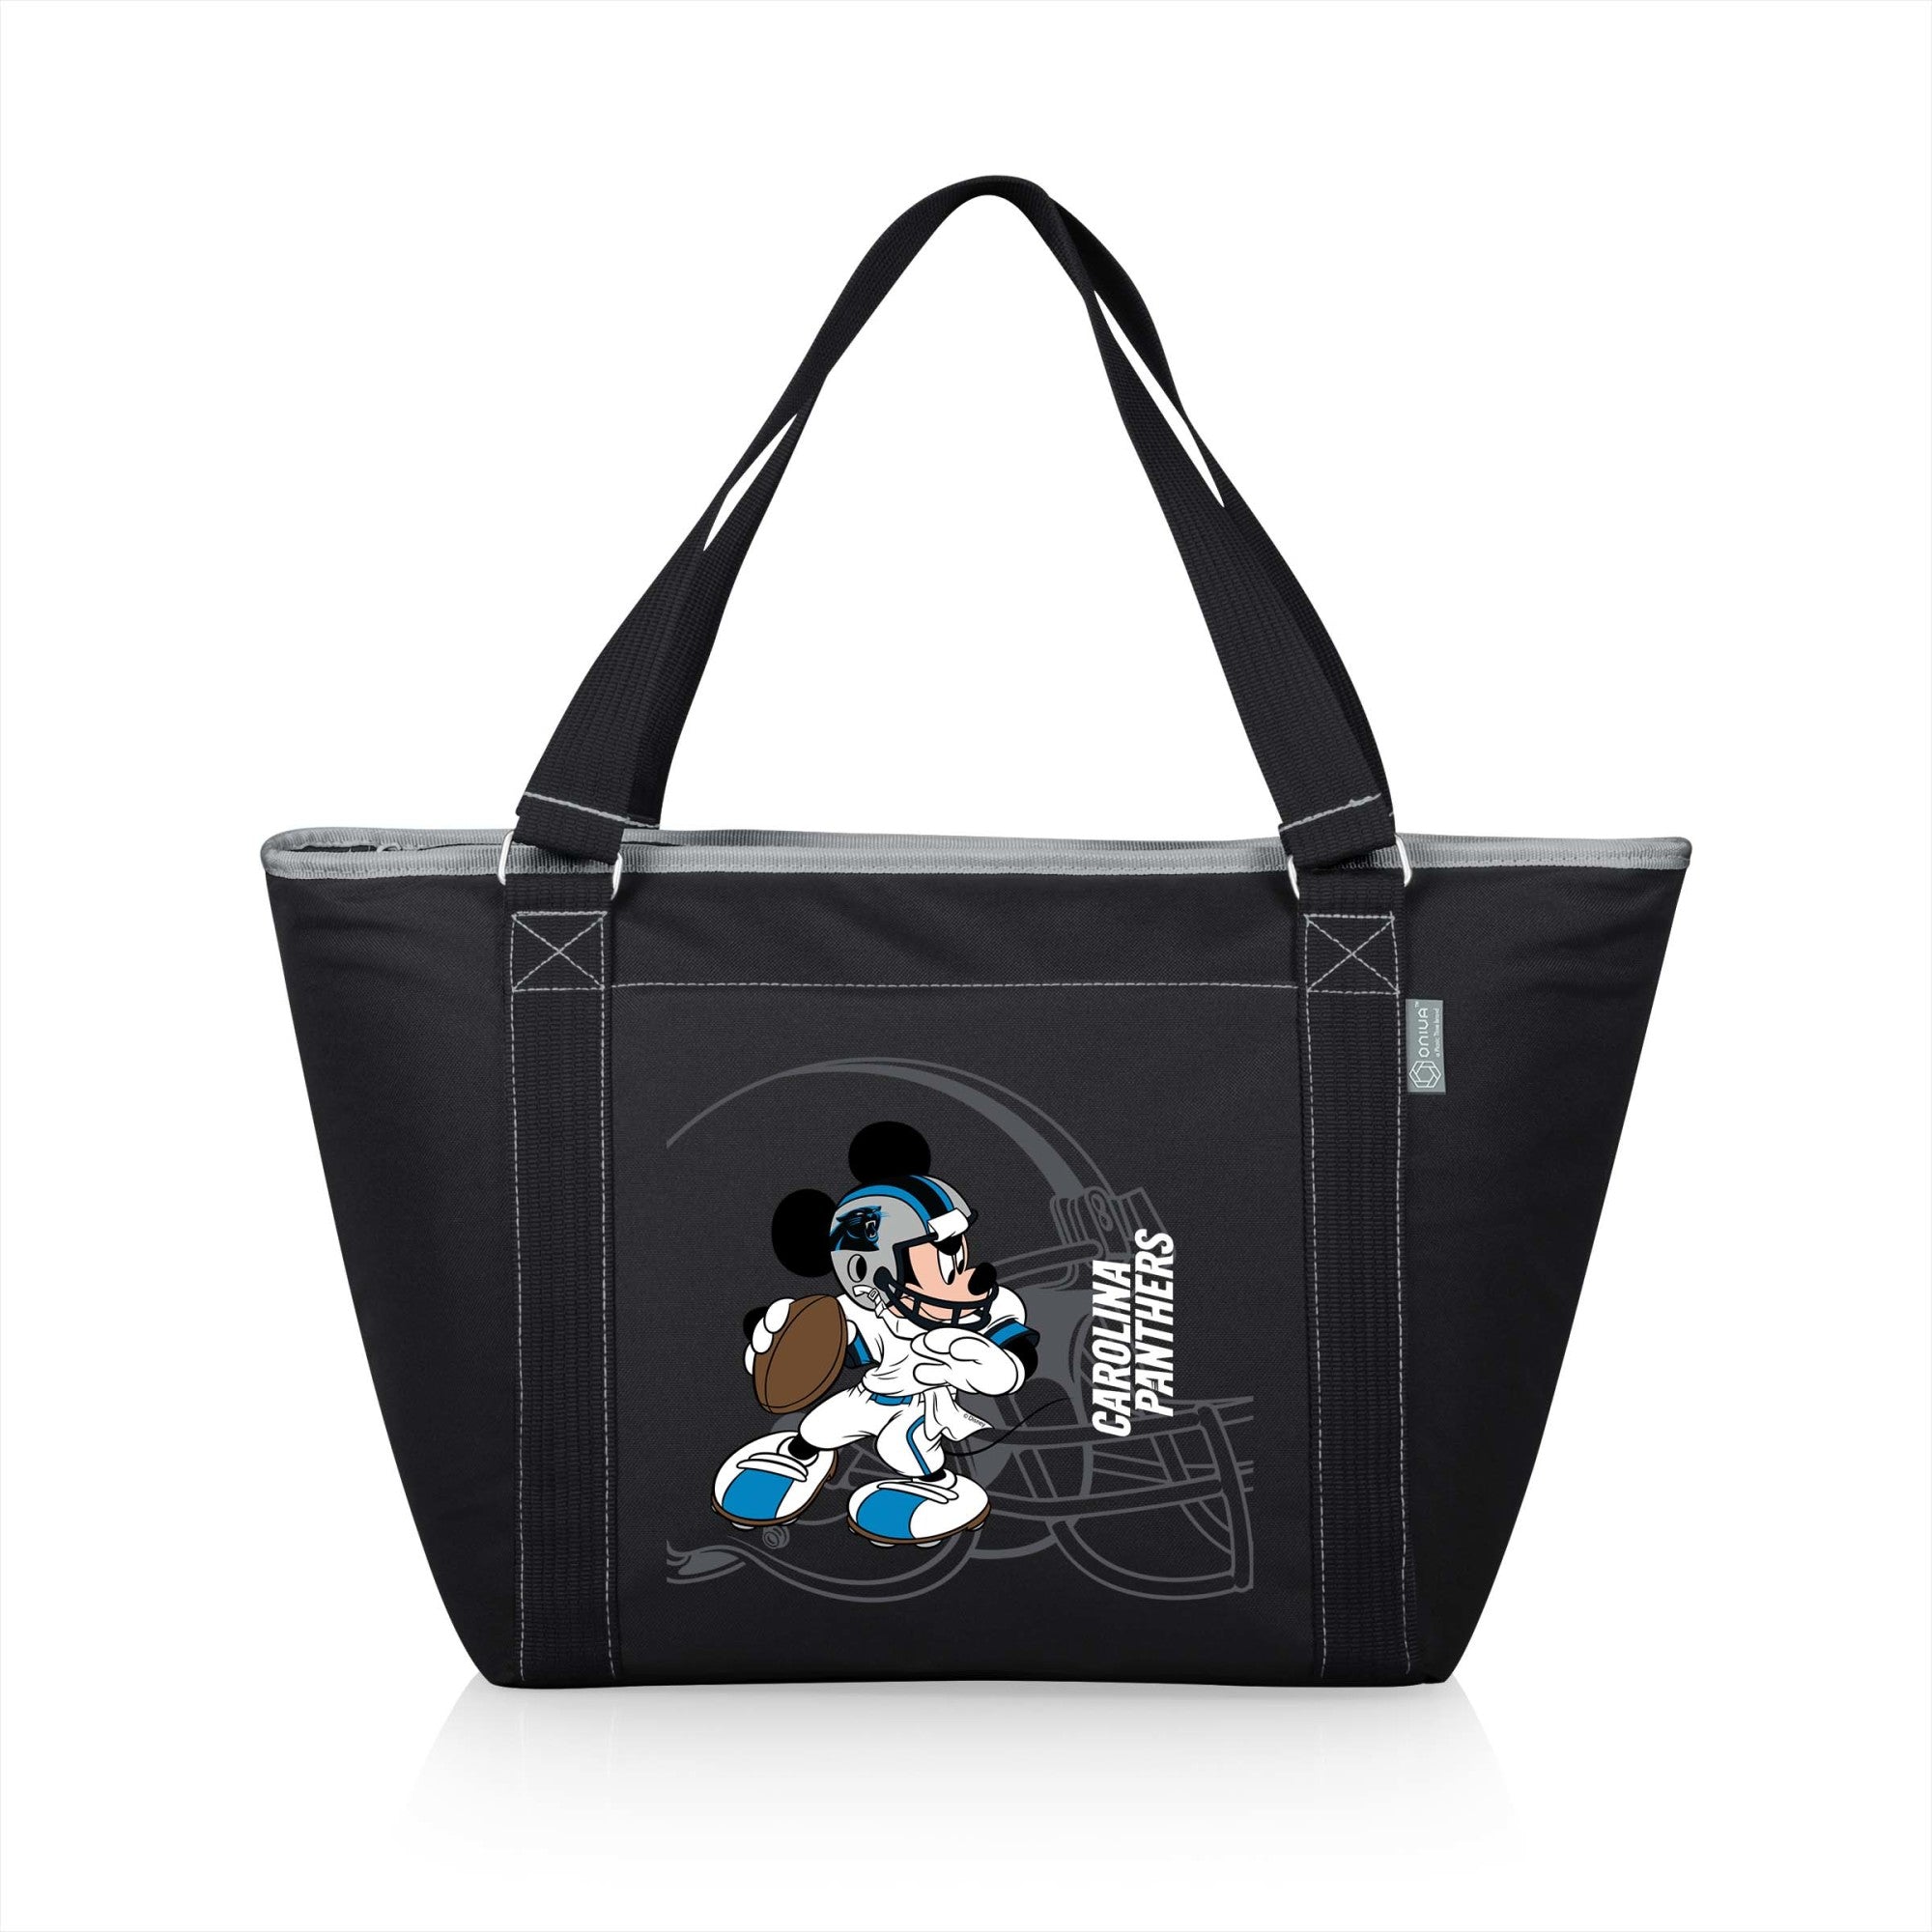 Mickey Mouse - Carolina Panthers - Topanga Cooler Tote Bag